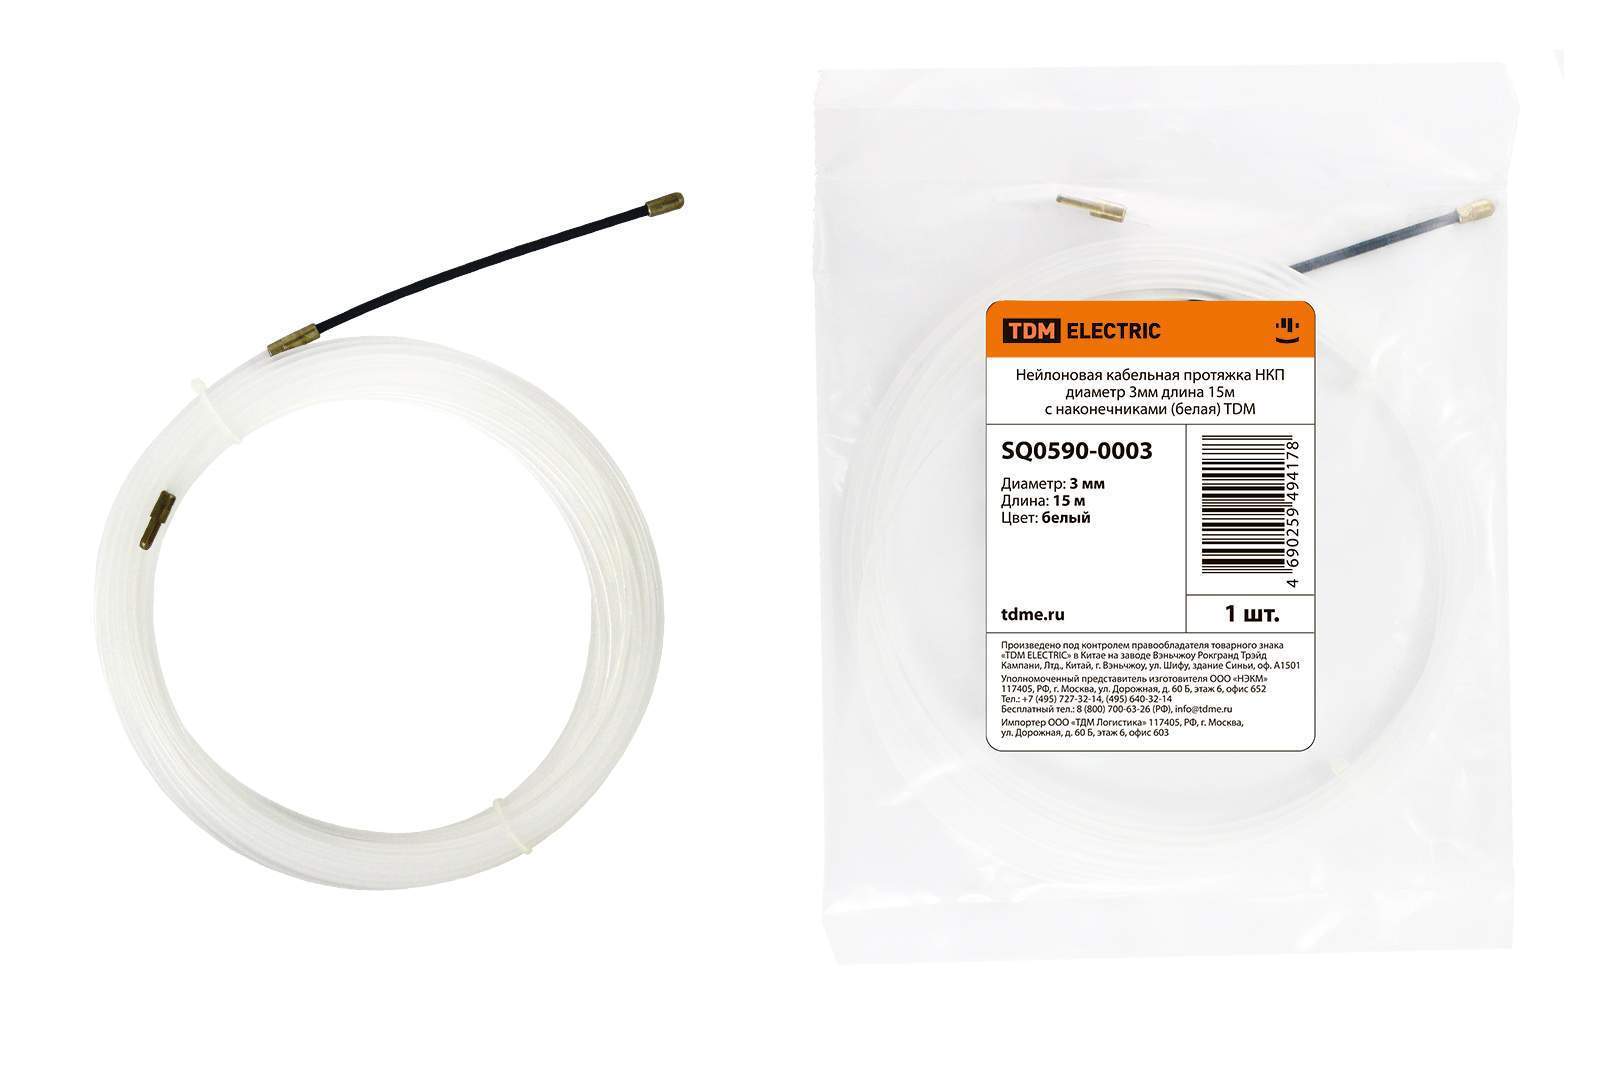 нейлоновая кабельная протяжка нкп диаметр 3мм длина 15м с наконечниками (белая) tdm от BTSprom.by